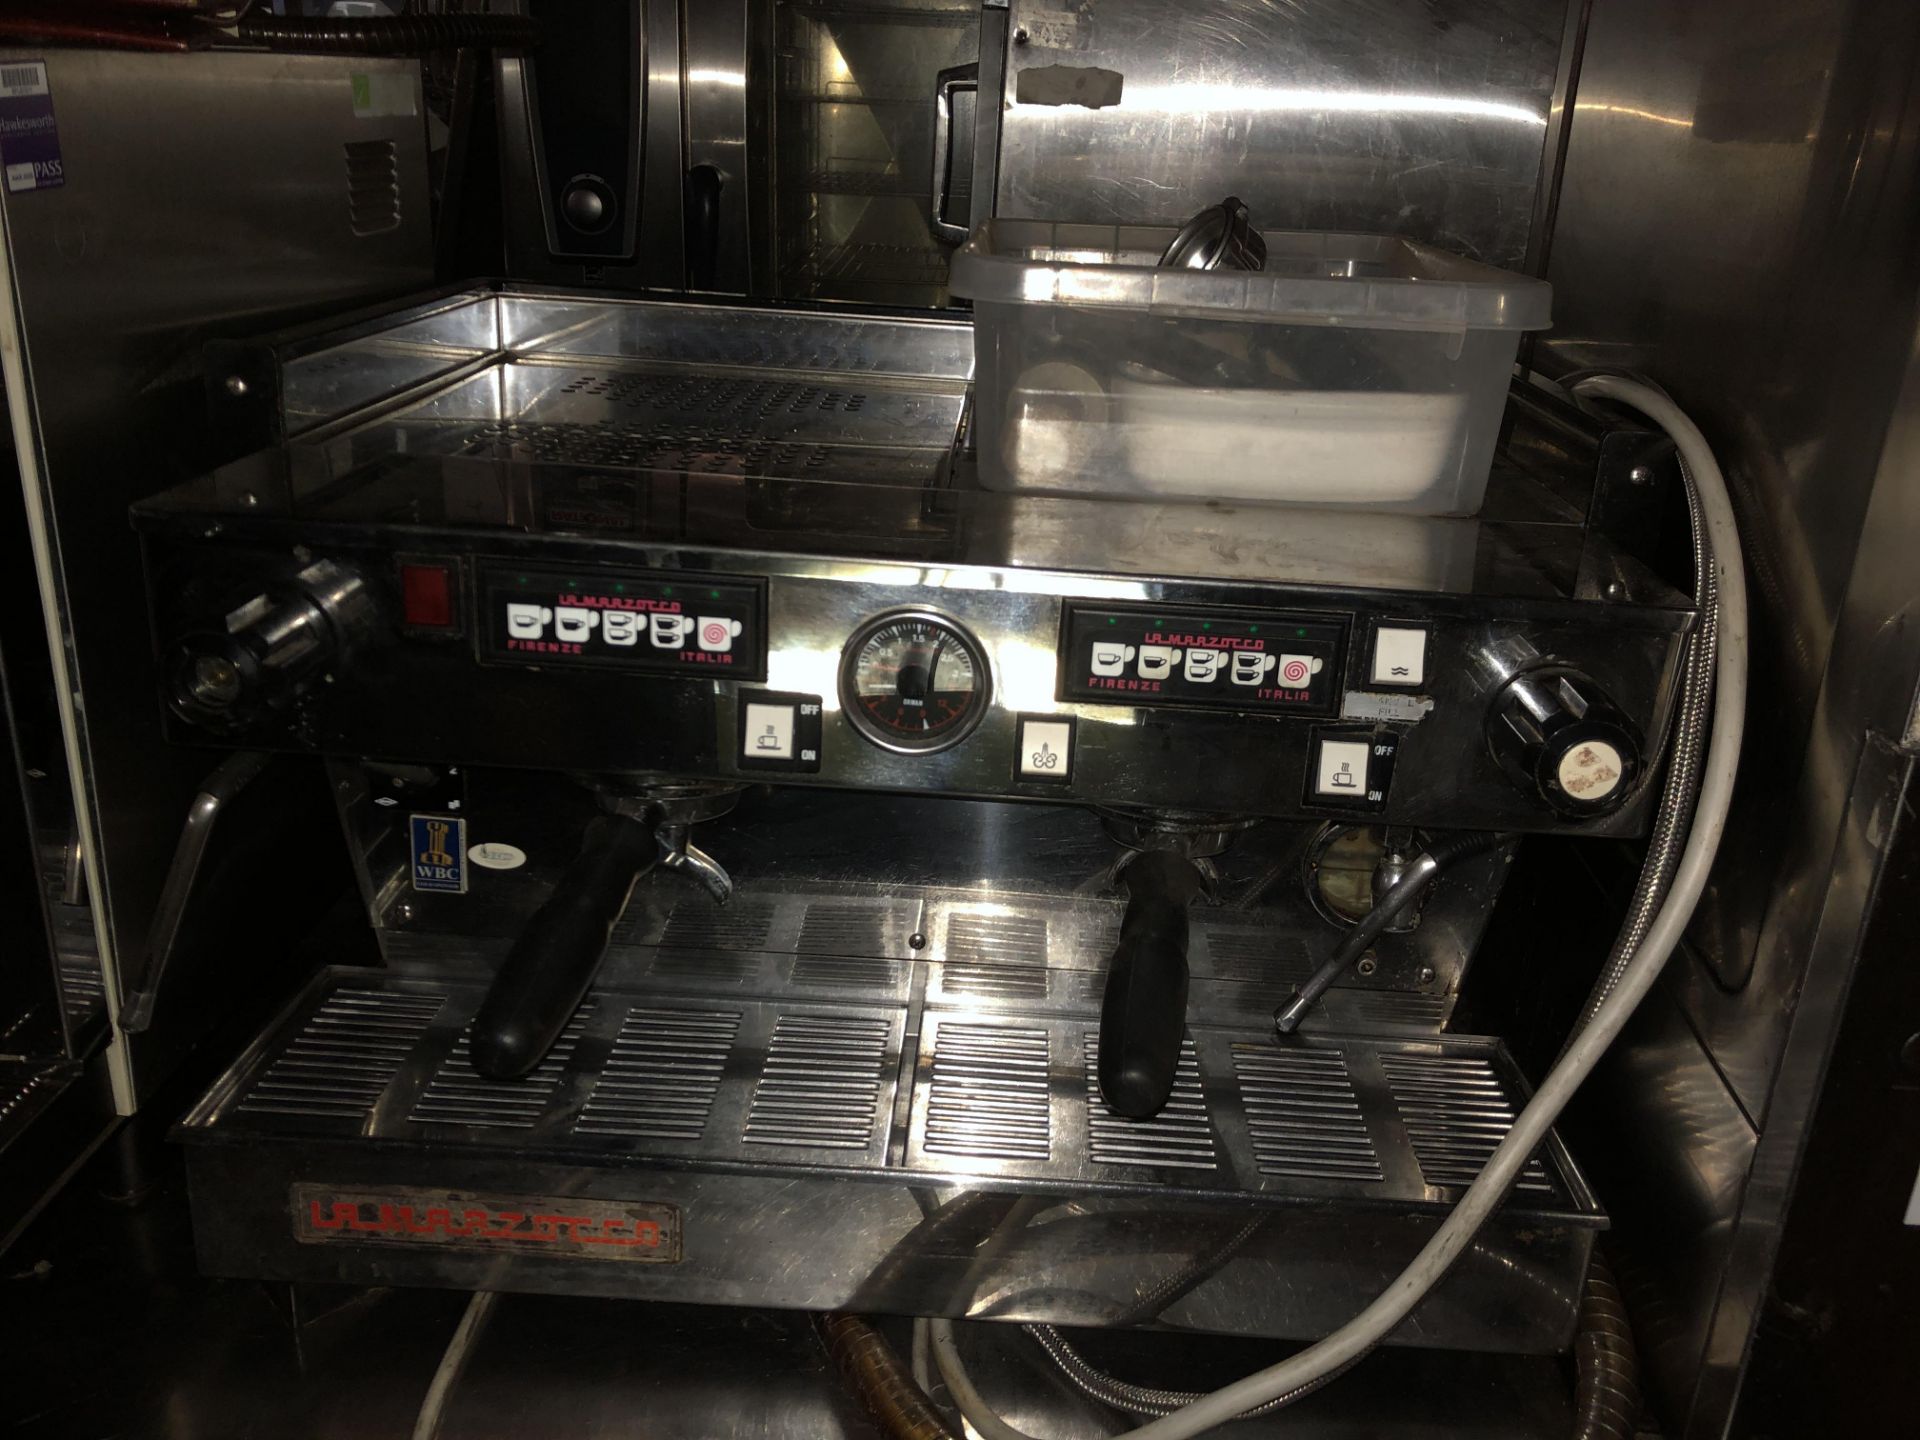 LA MARZOCCO COFFEE MACHINE